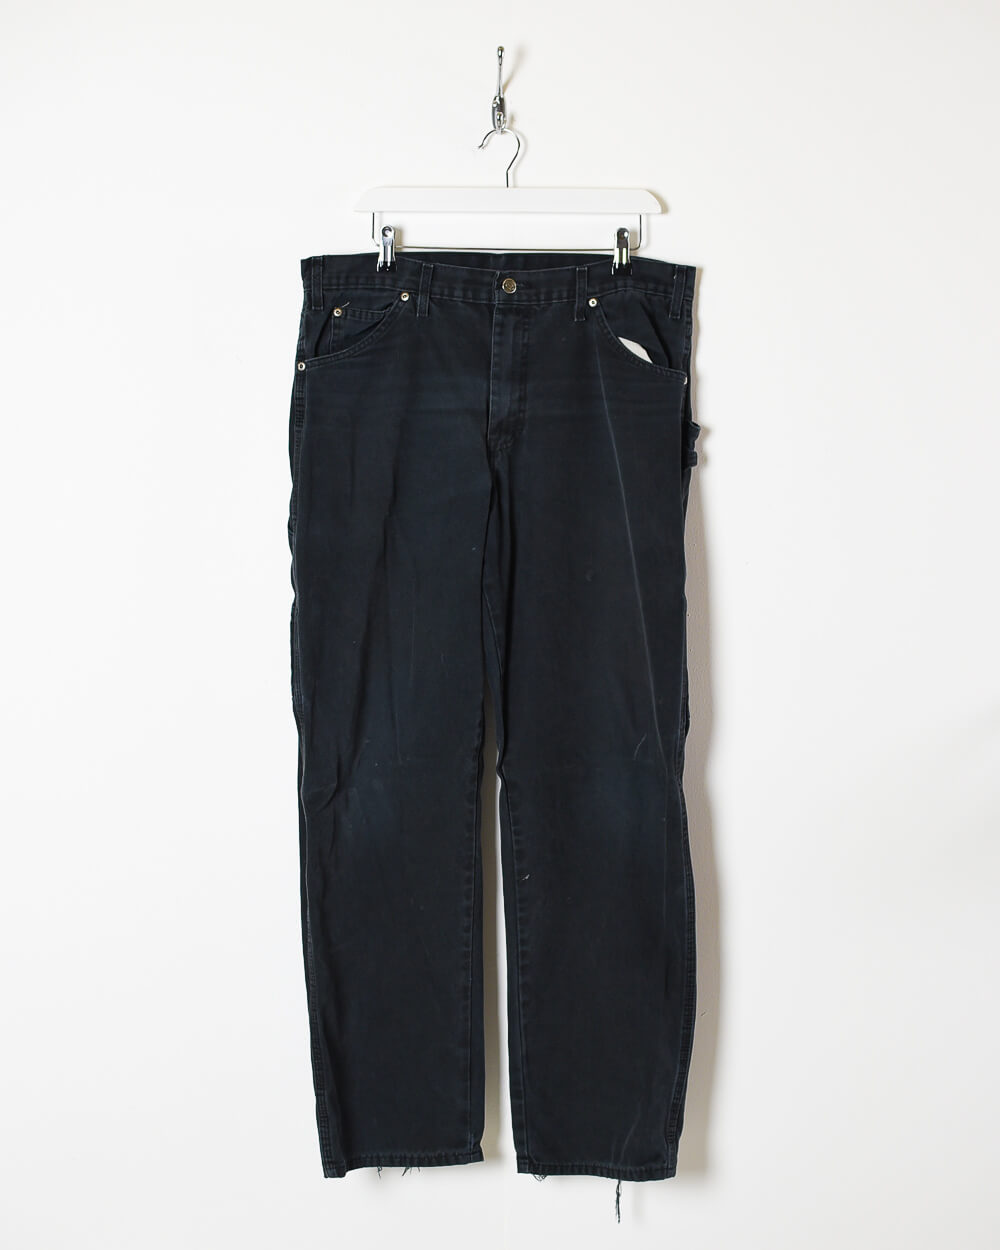 Black Dickies Carpenter Jeans - W34 L32